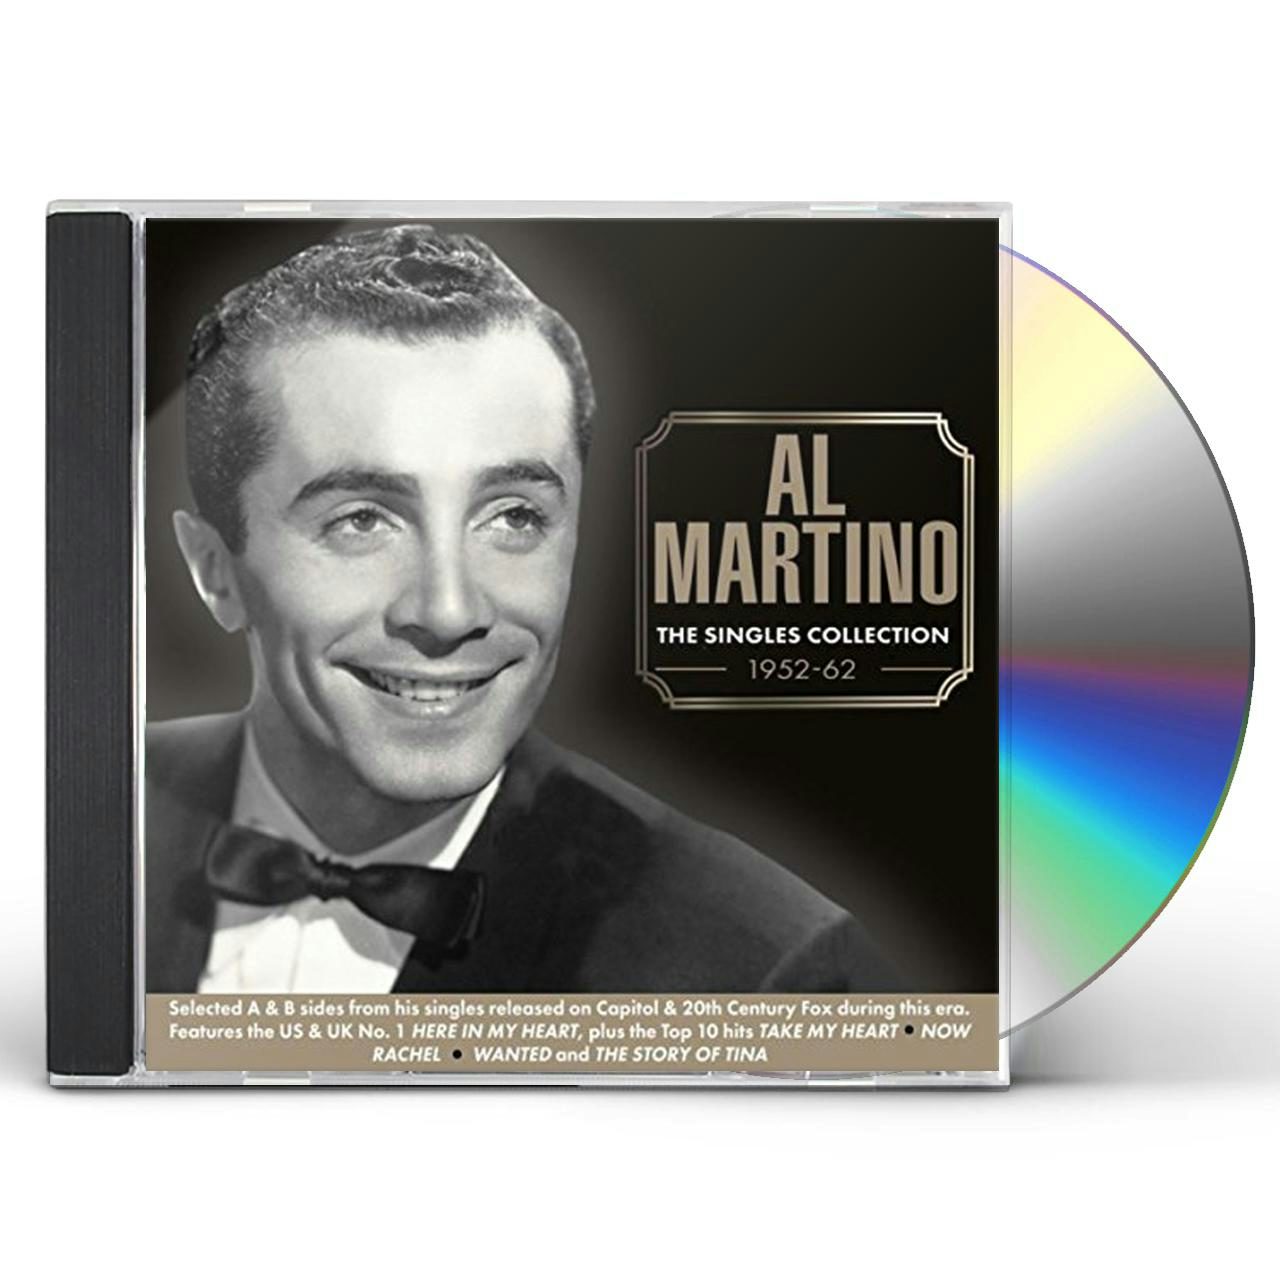 Al Martino SINGLES COLLECTION 1952-62 CD